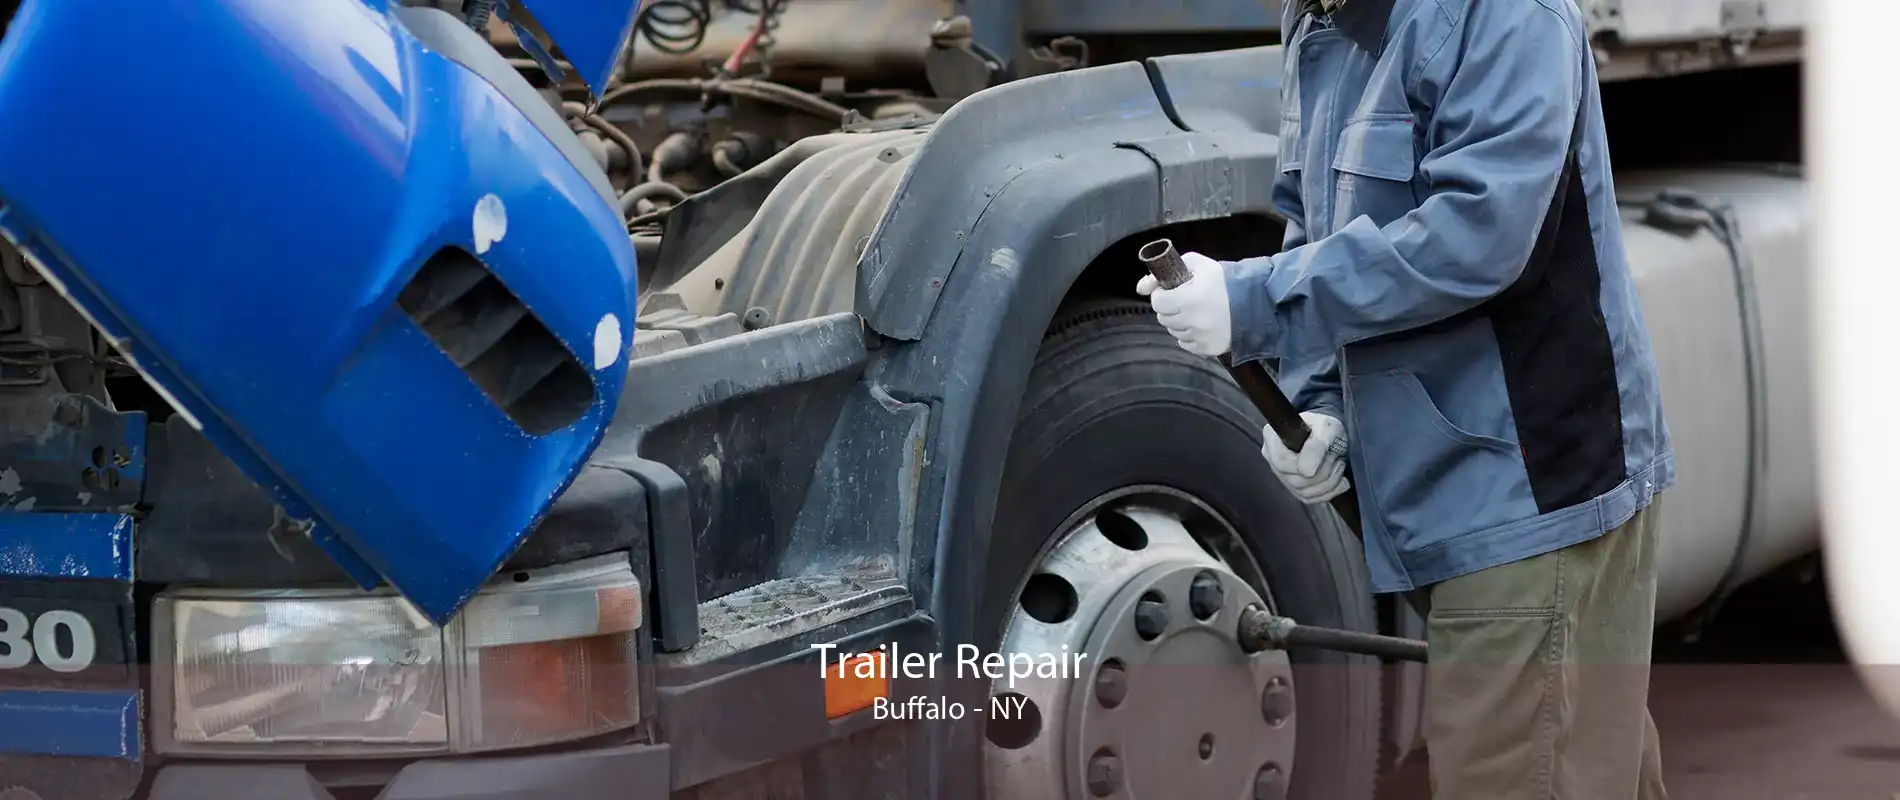 Trailer Repair Buffalo - NY